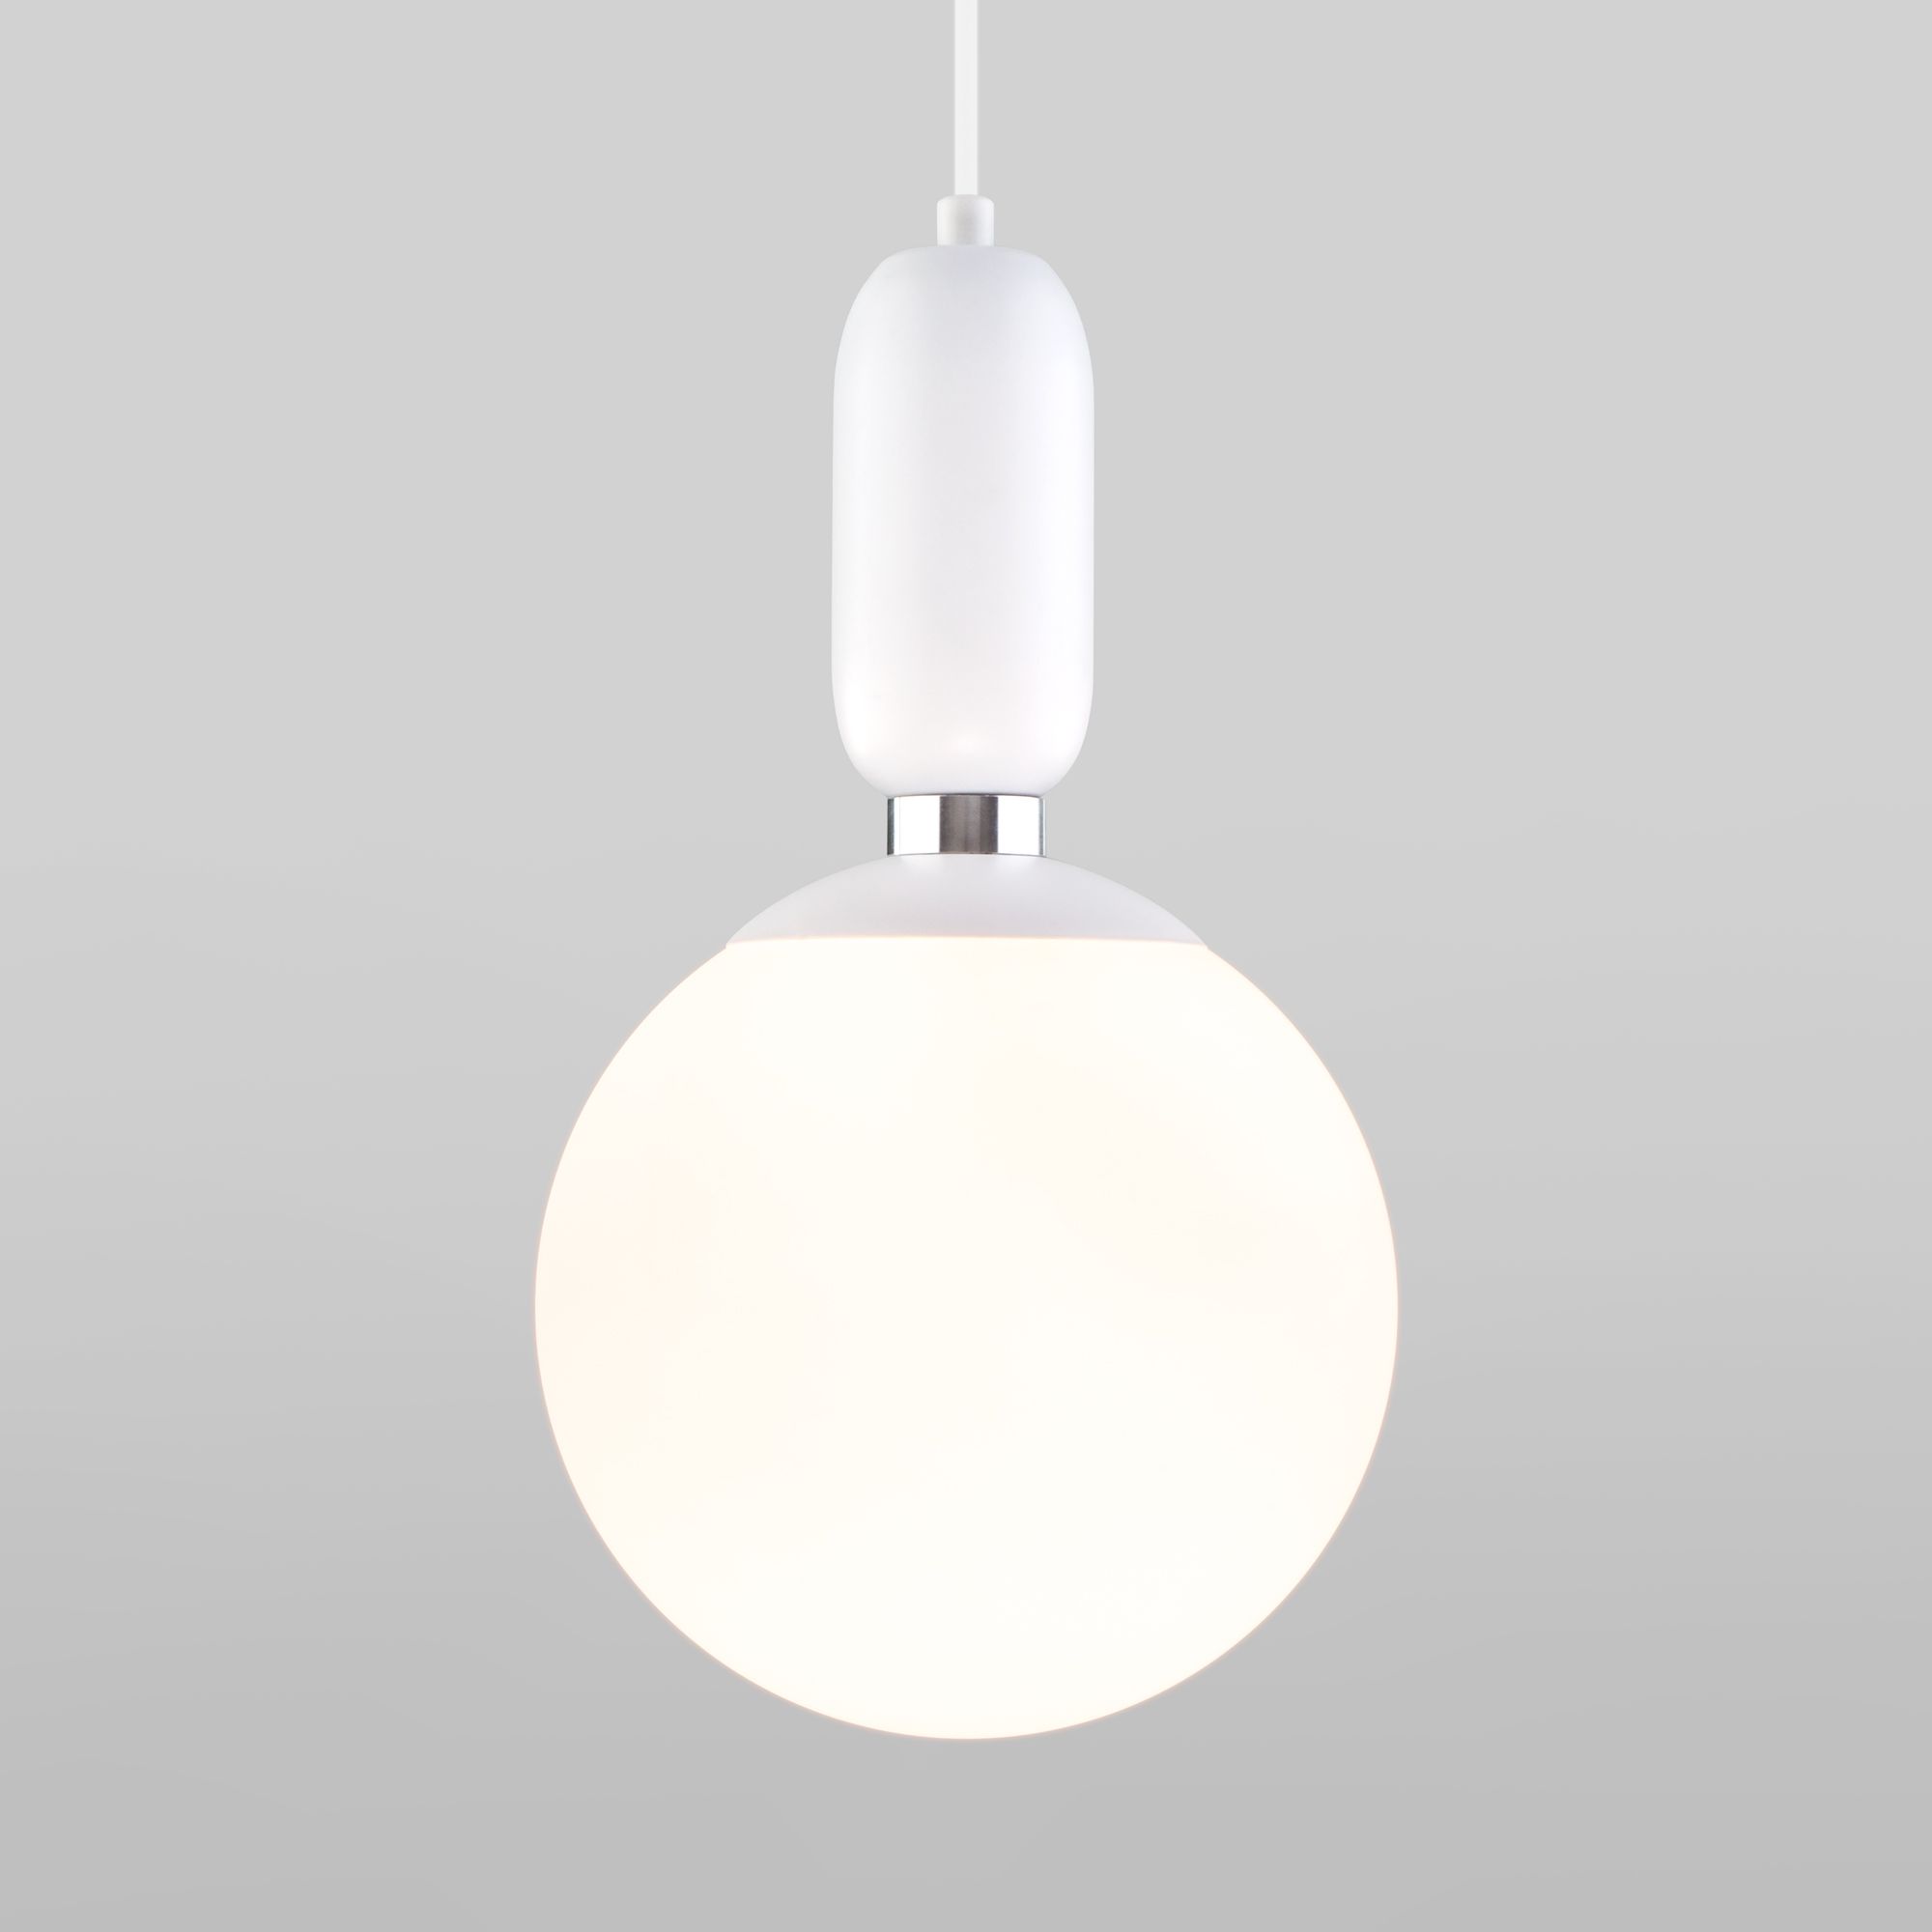 Подвесной светильник со стеклянным плафоном 50197/1 белый